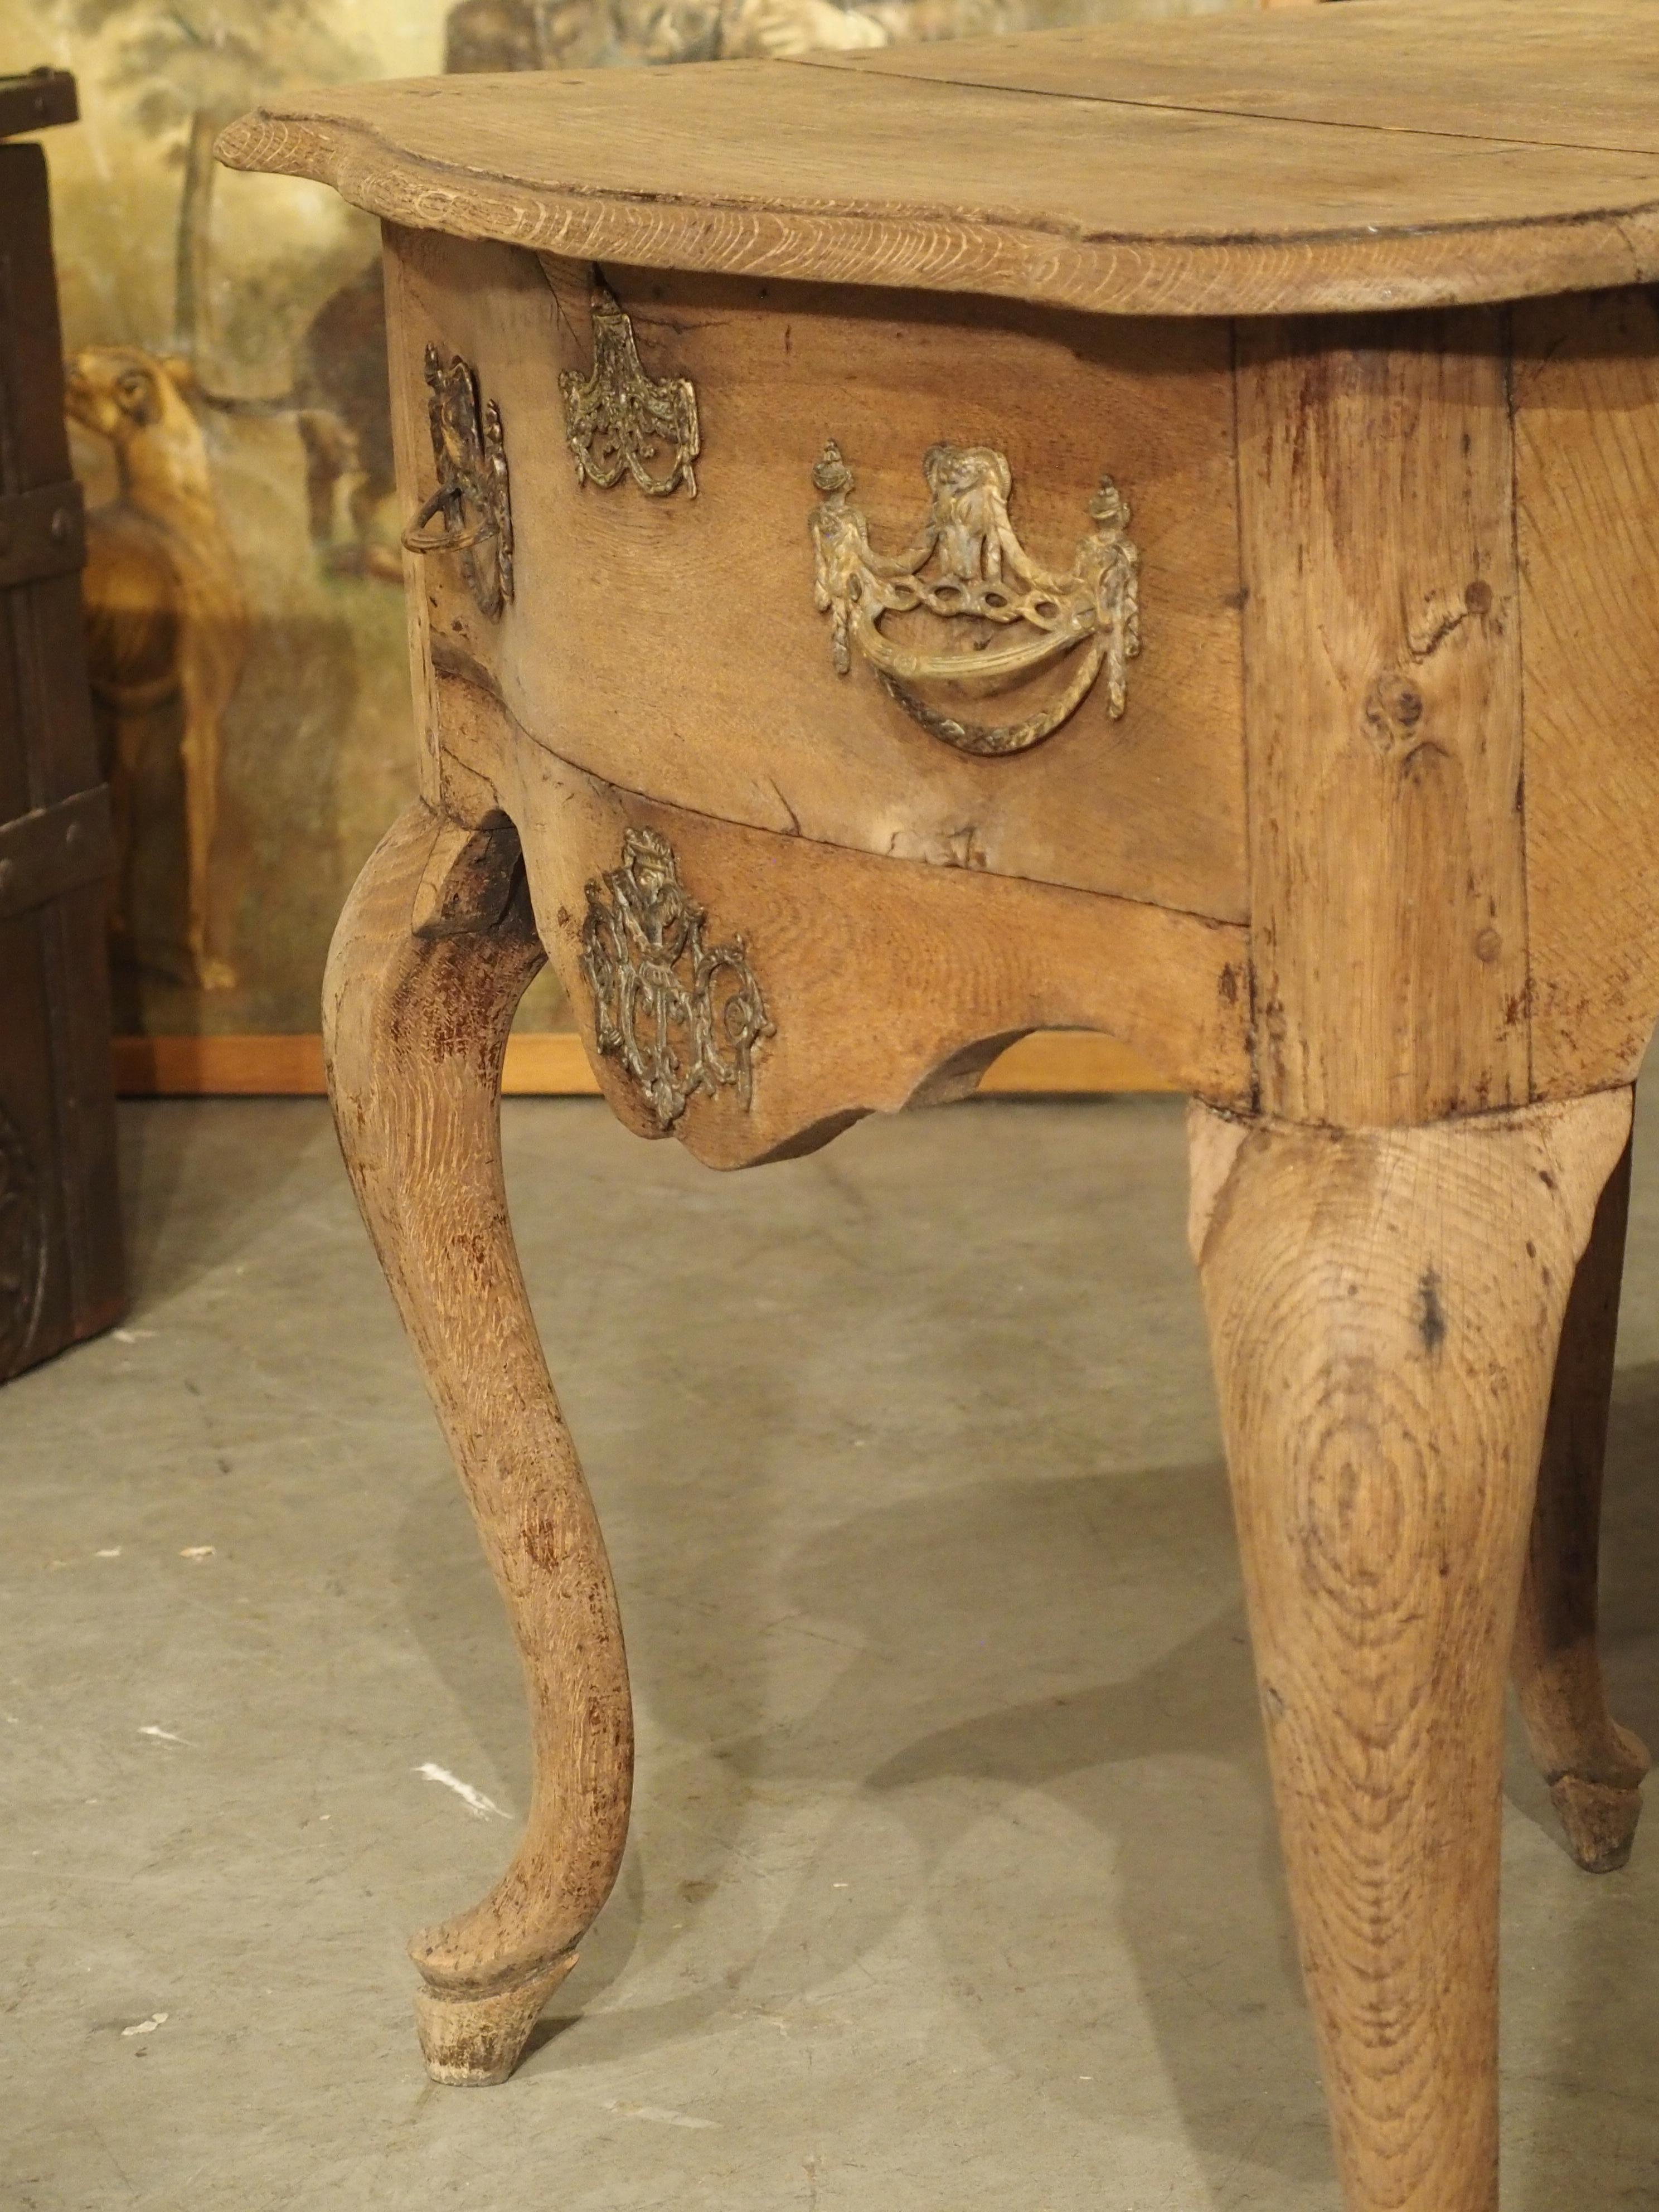 Dieser charmante Konsolentisch aus Eiche wurde um 1700 in den Niederlanden handgeschnitzt. Die geformte Platte hat eine viertelrunde Leiste, die über dem Tischfuß hängt.

Auf der Vorderseite der Konsole befindet sich eine Schublade, die mit zwei